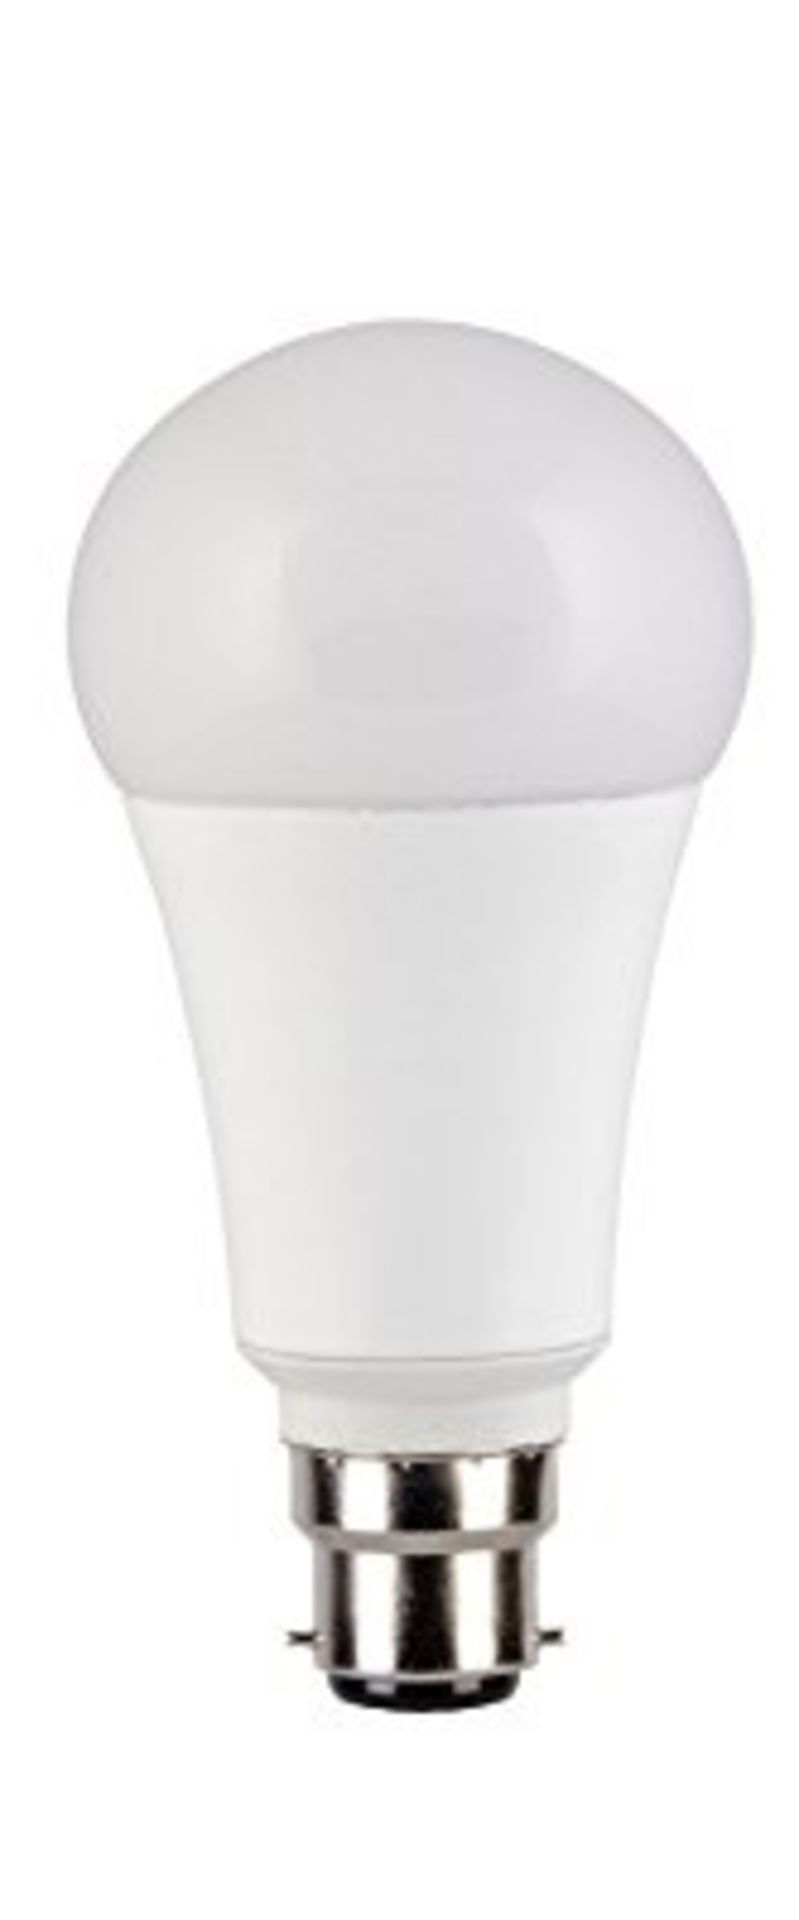 V Brand New Muller Licht LED Light Bulb (Design May Vary)